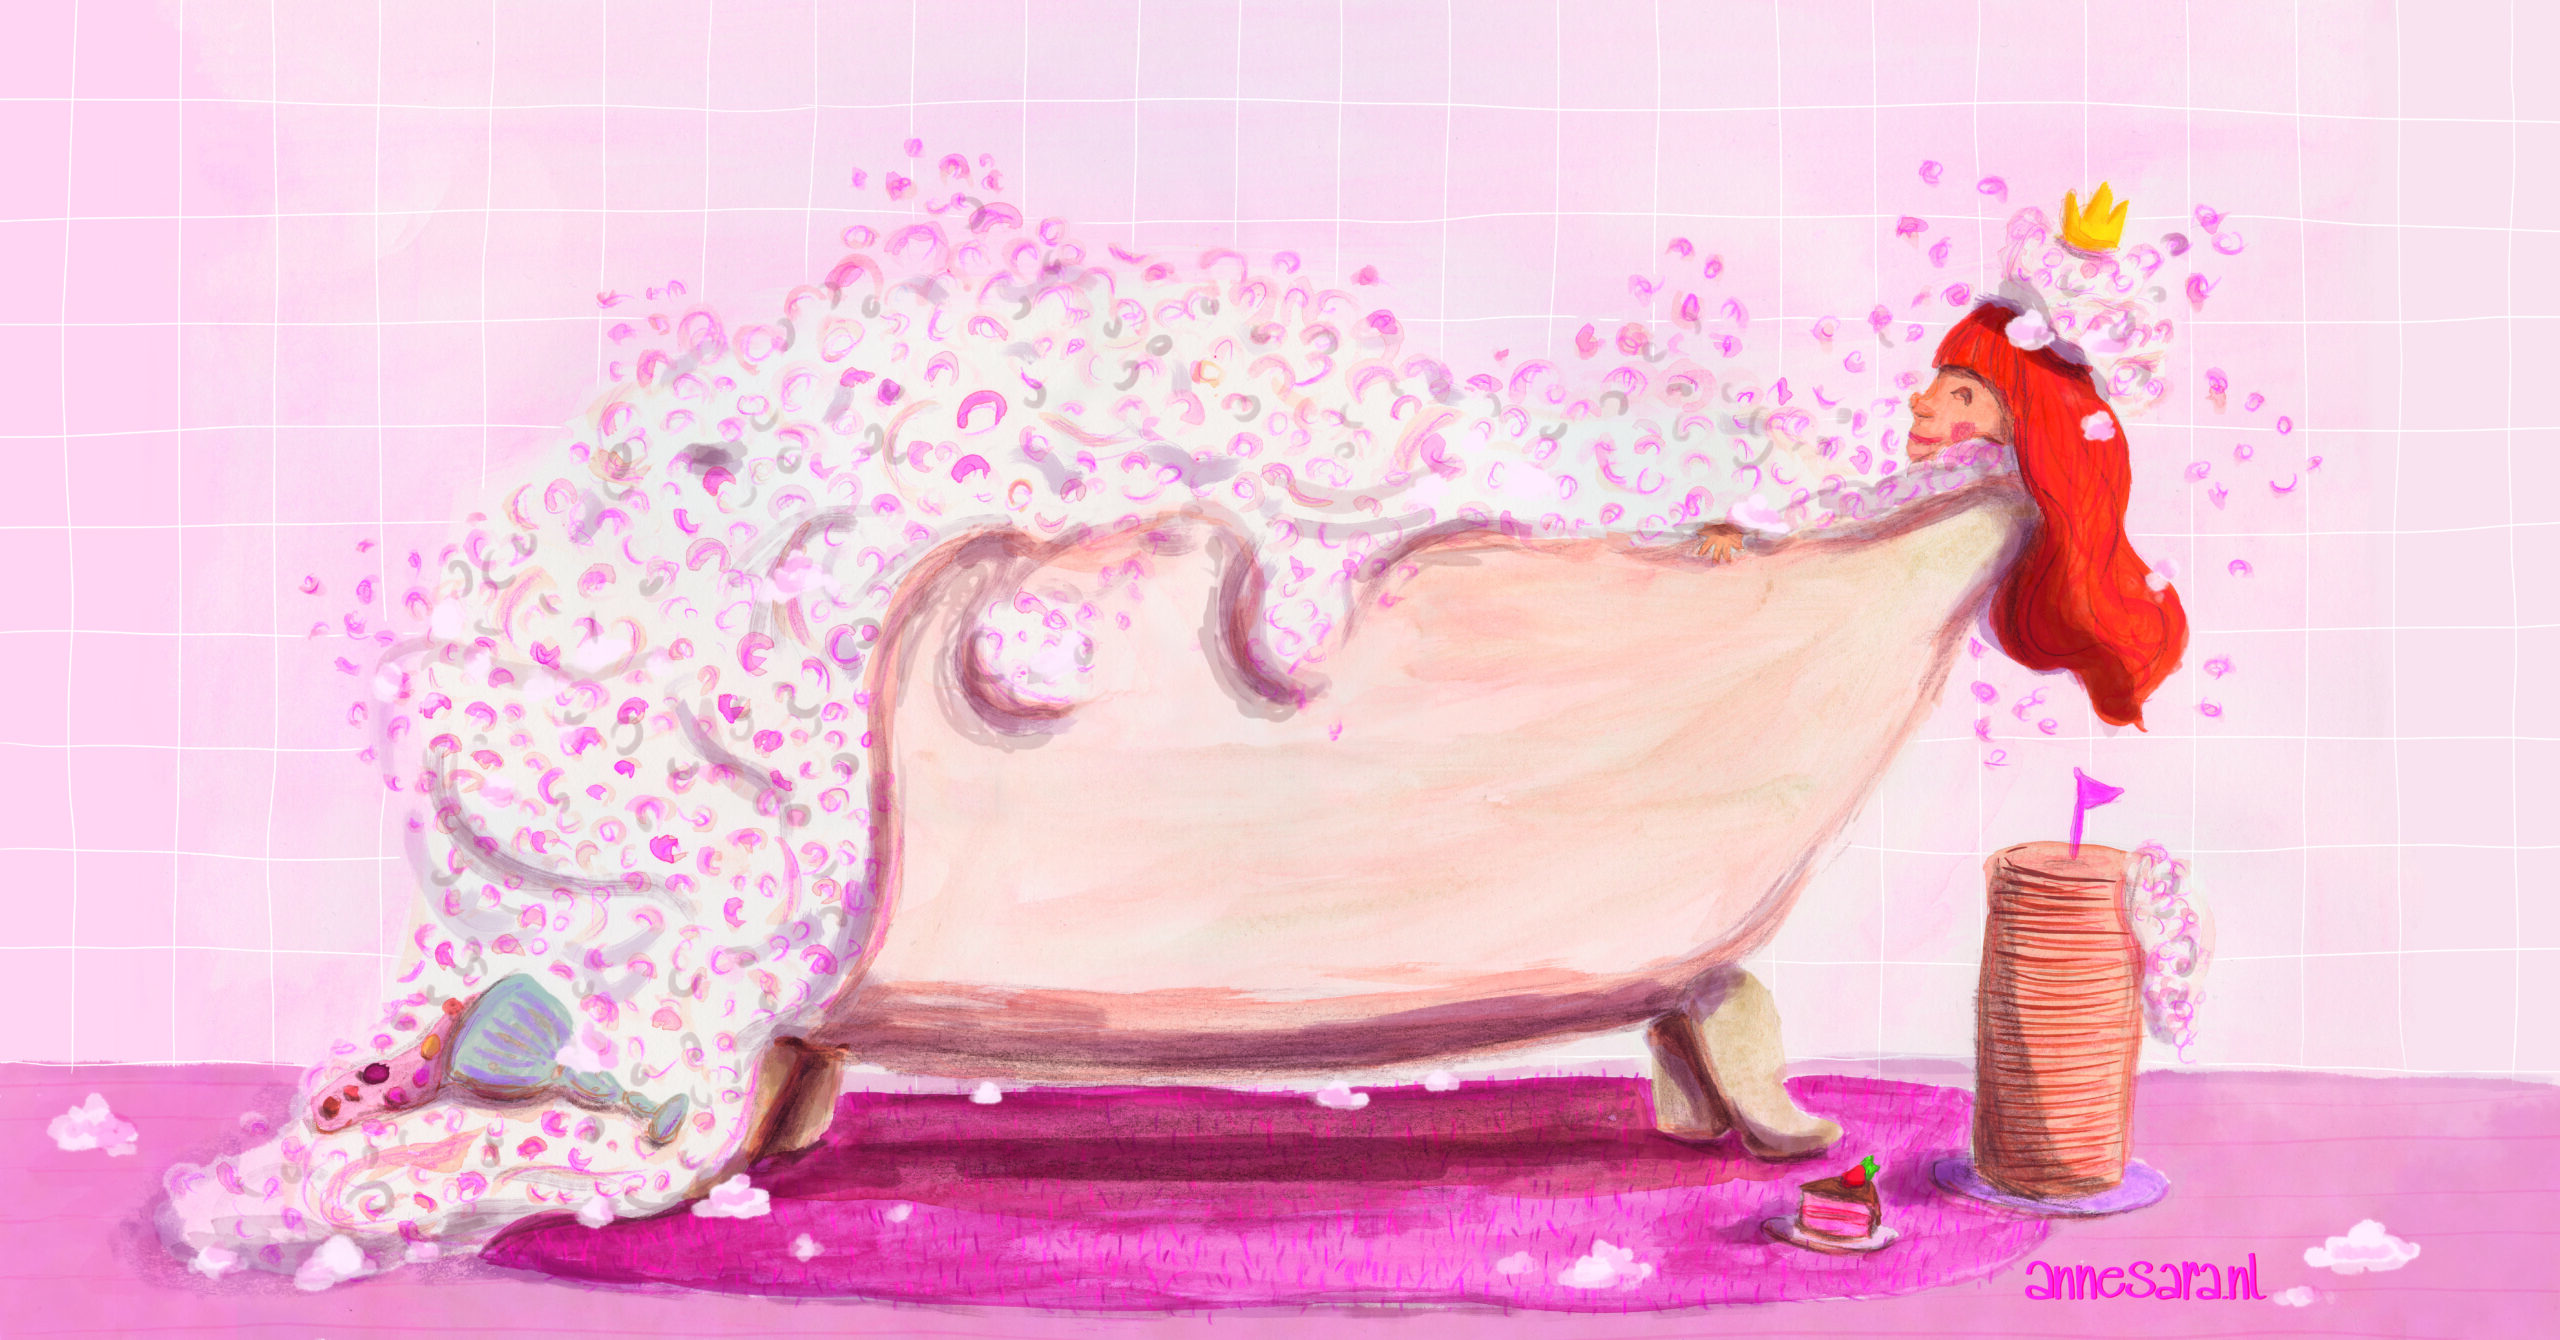 Bubble bath illustration